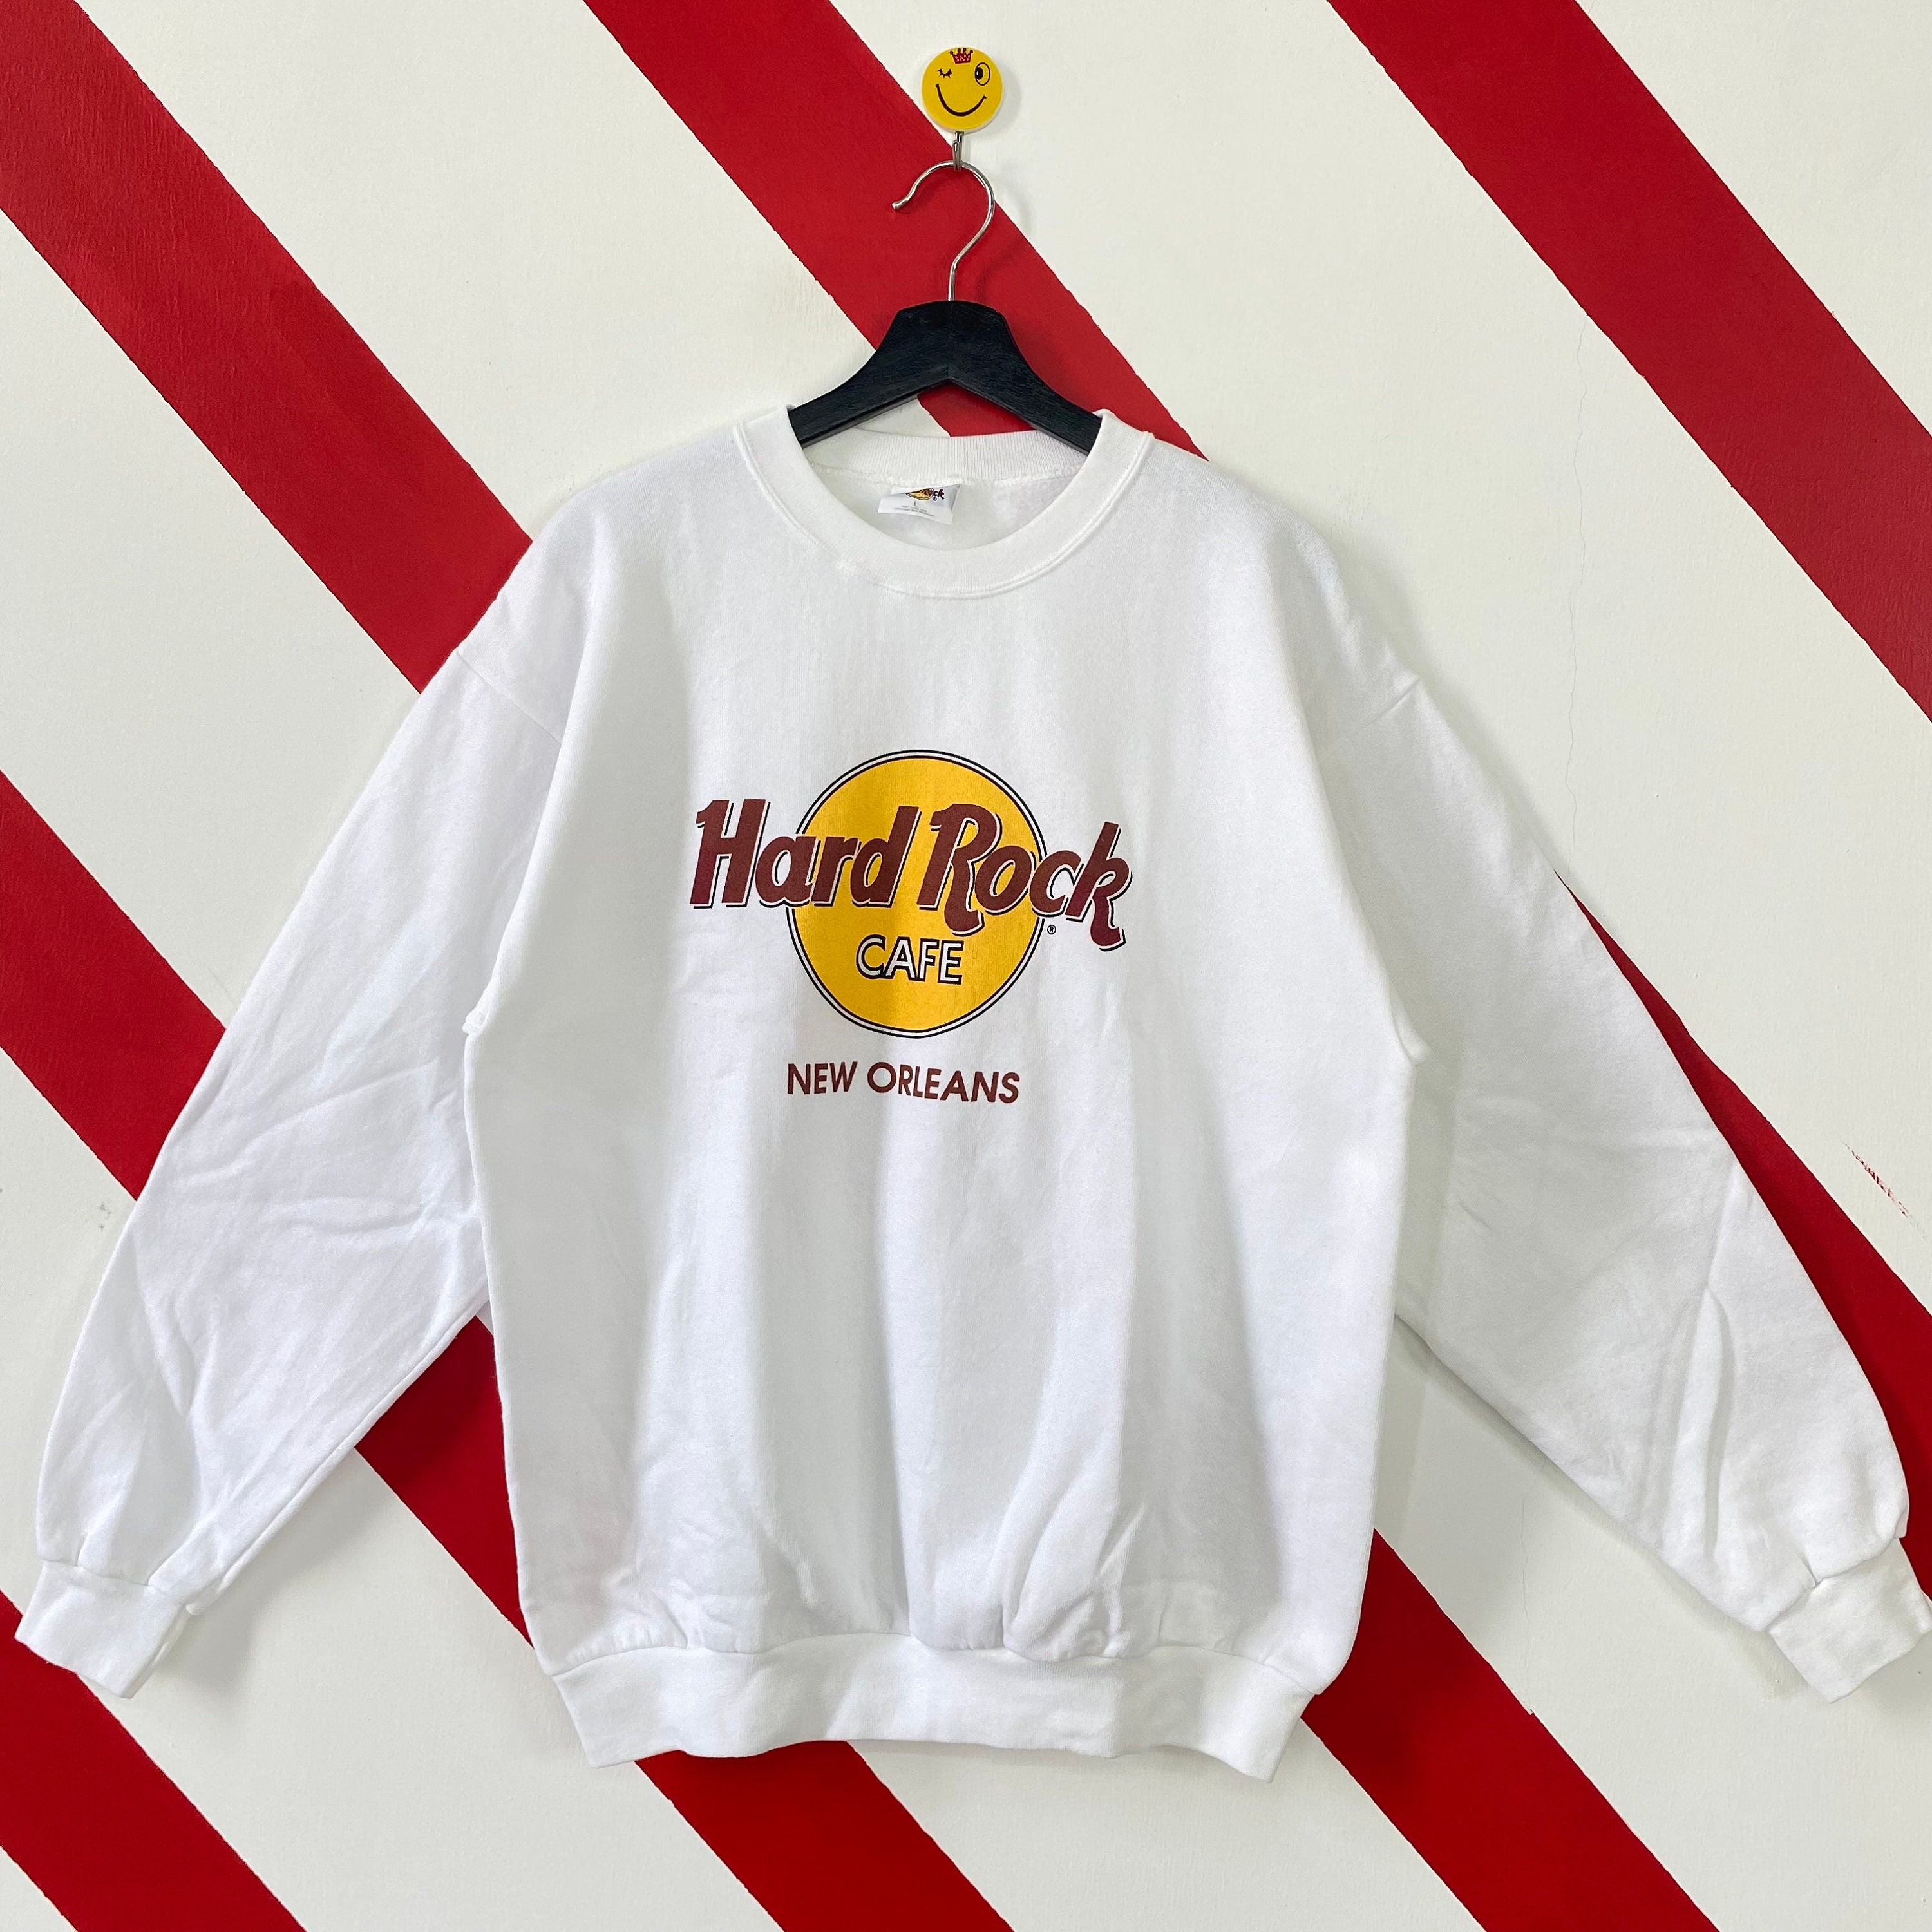 Prestige Actief binnenvallen Vintage jaren 90 Hard Rock Cafe Sweatshirt Hard Rock Cafe - Etsy België